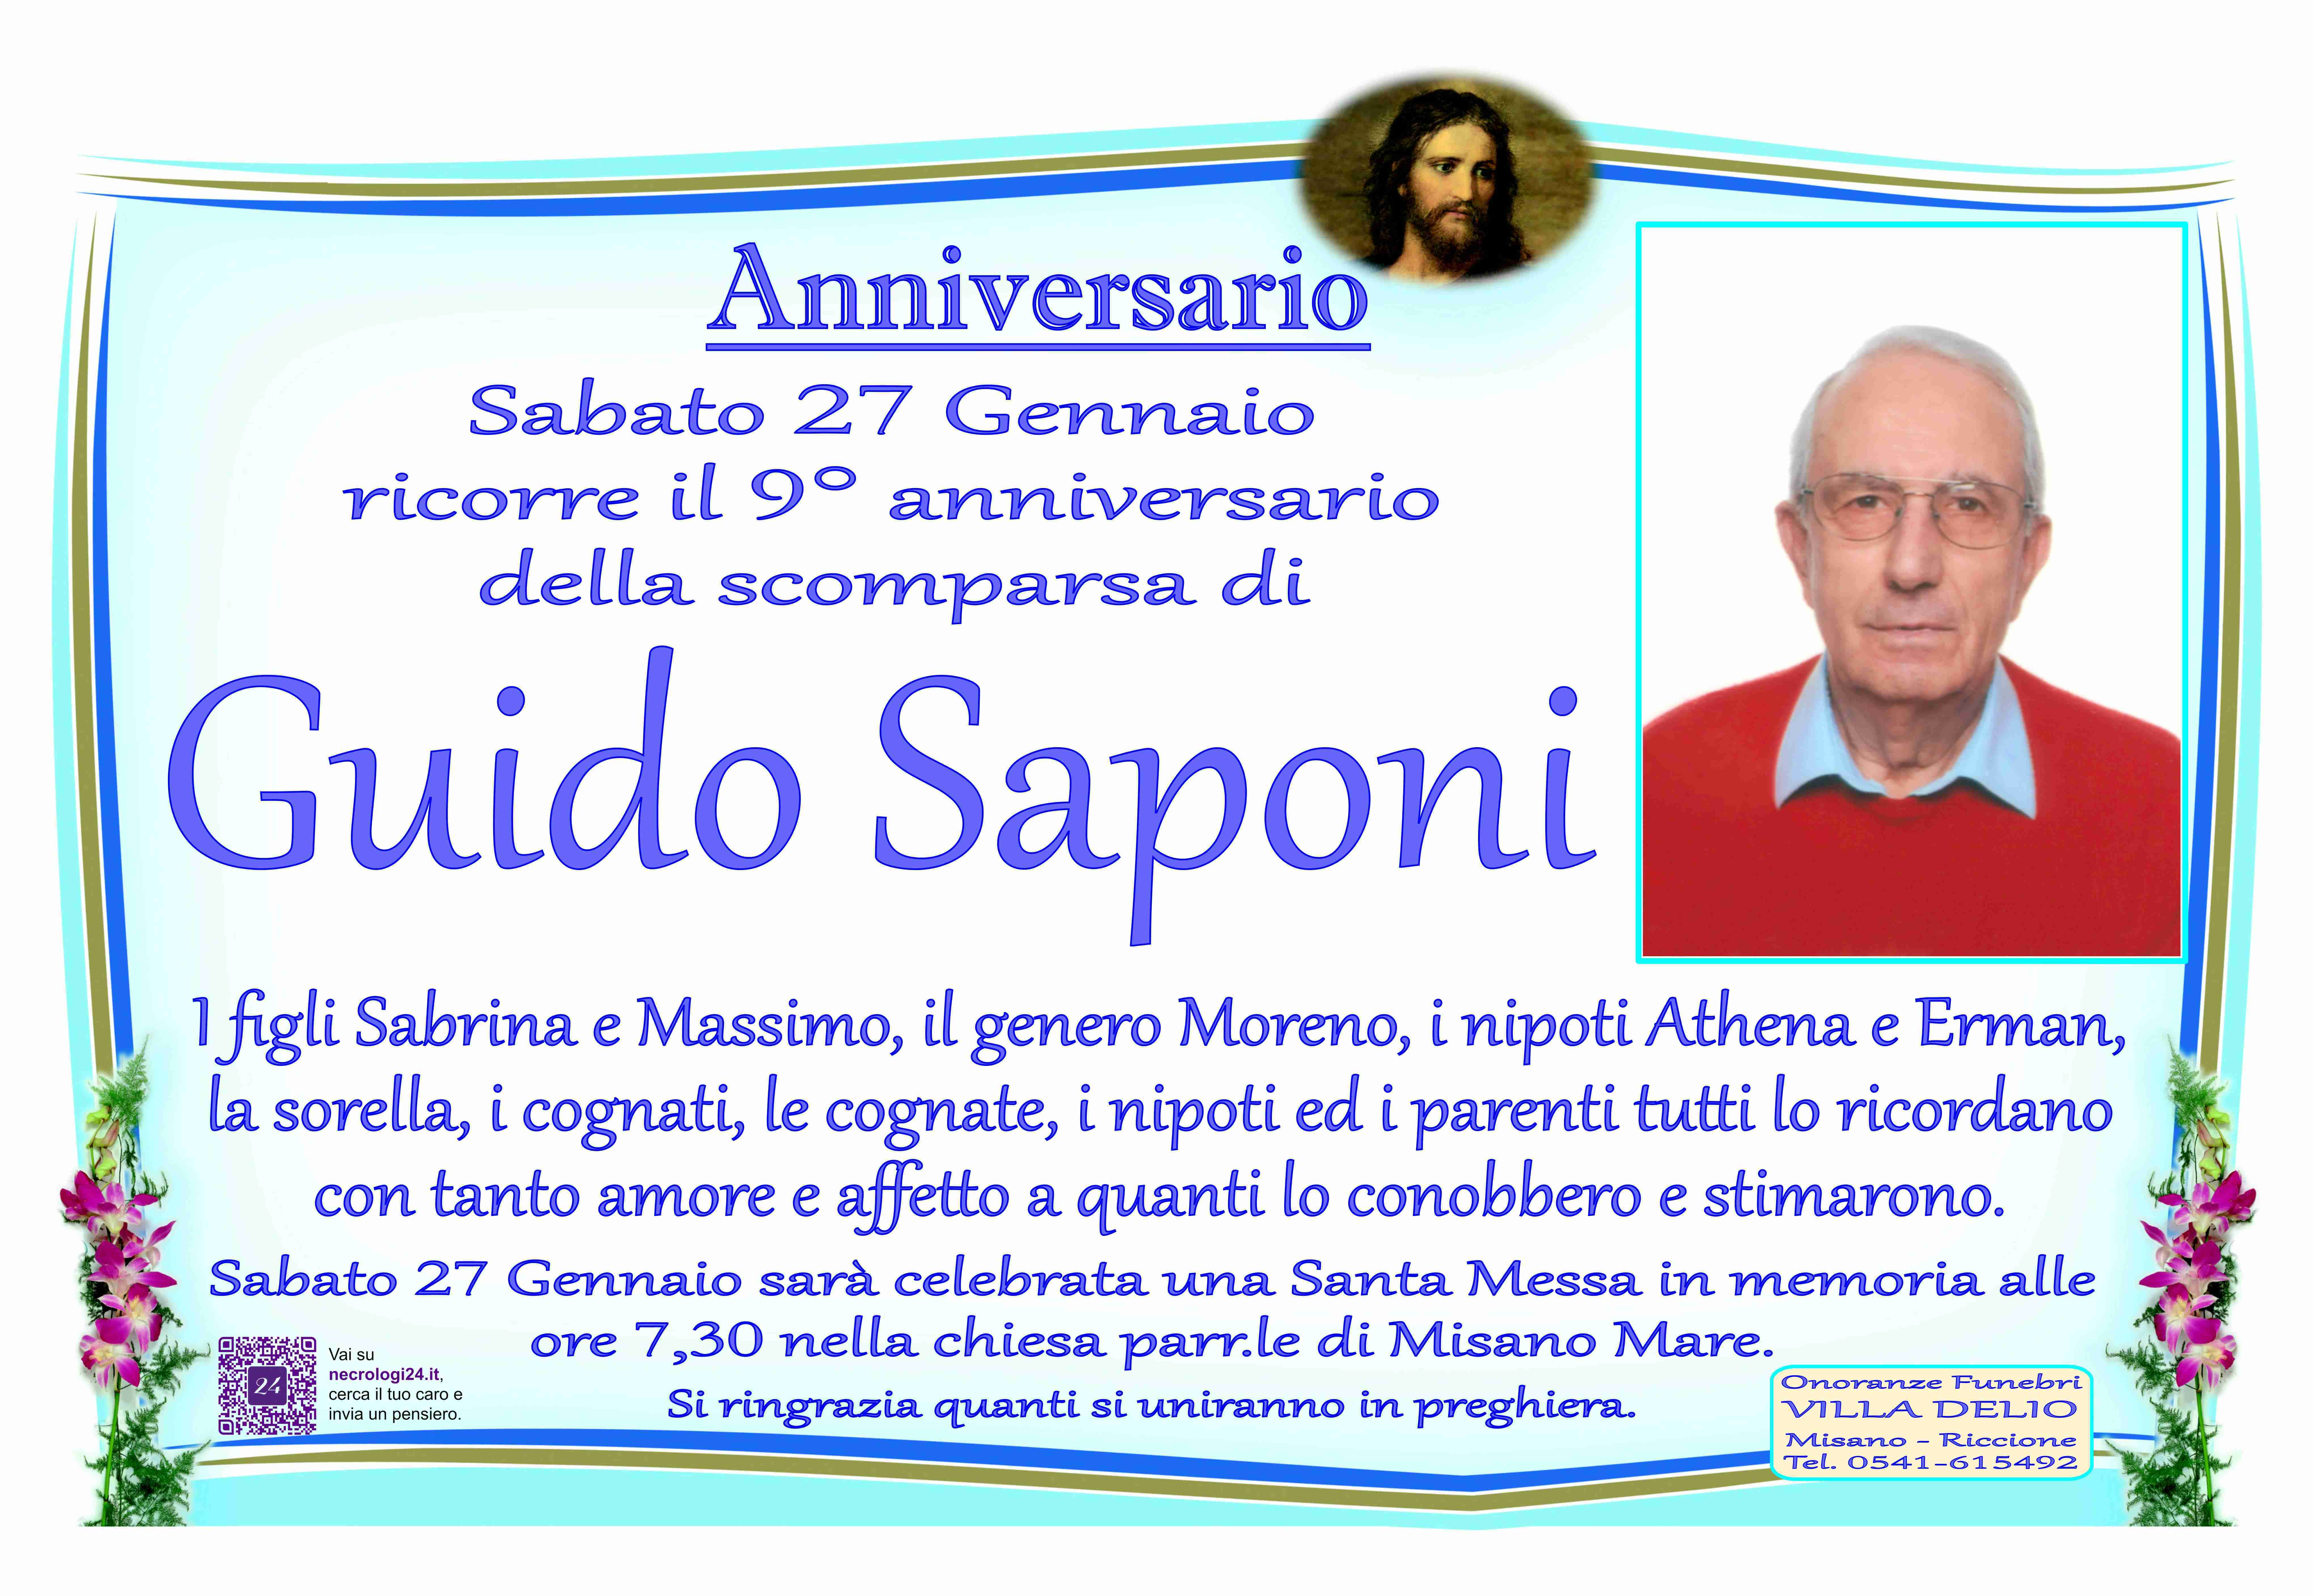 Guido Saponi